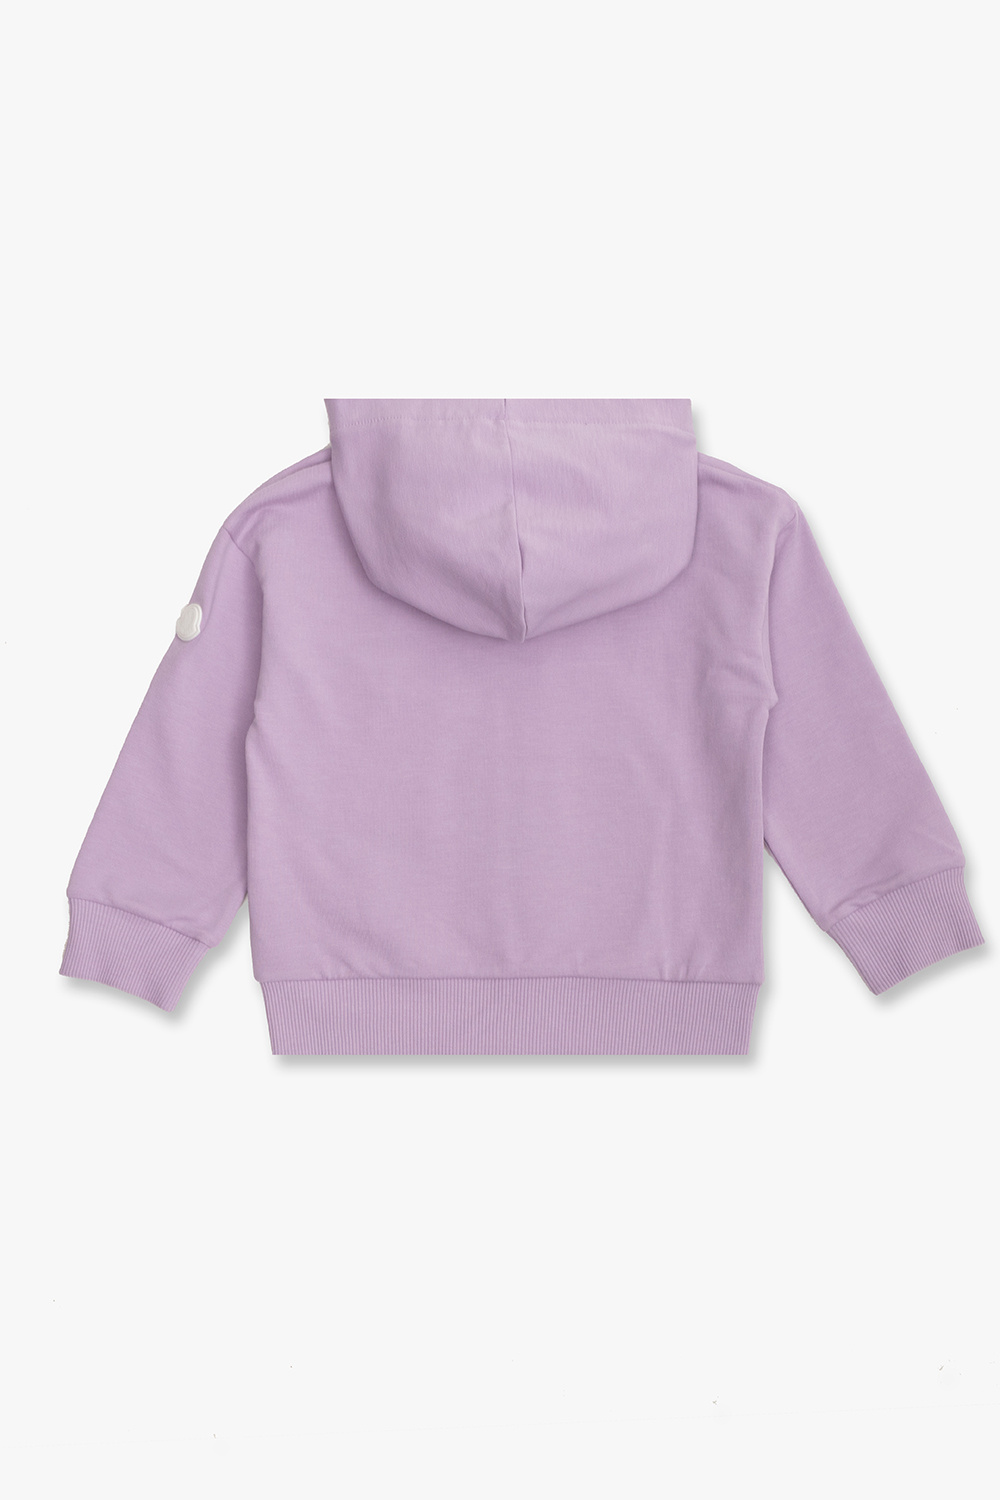 Moncler Enfant Zip-up sweatshirt